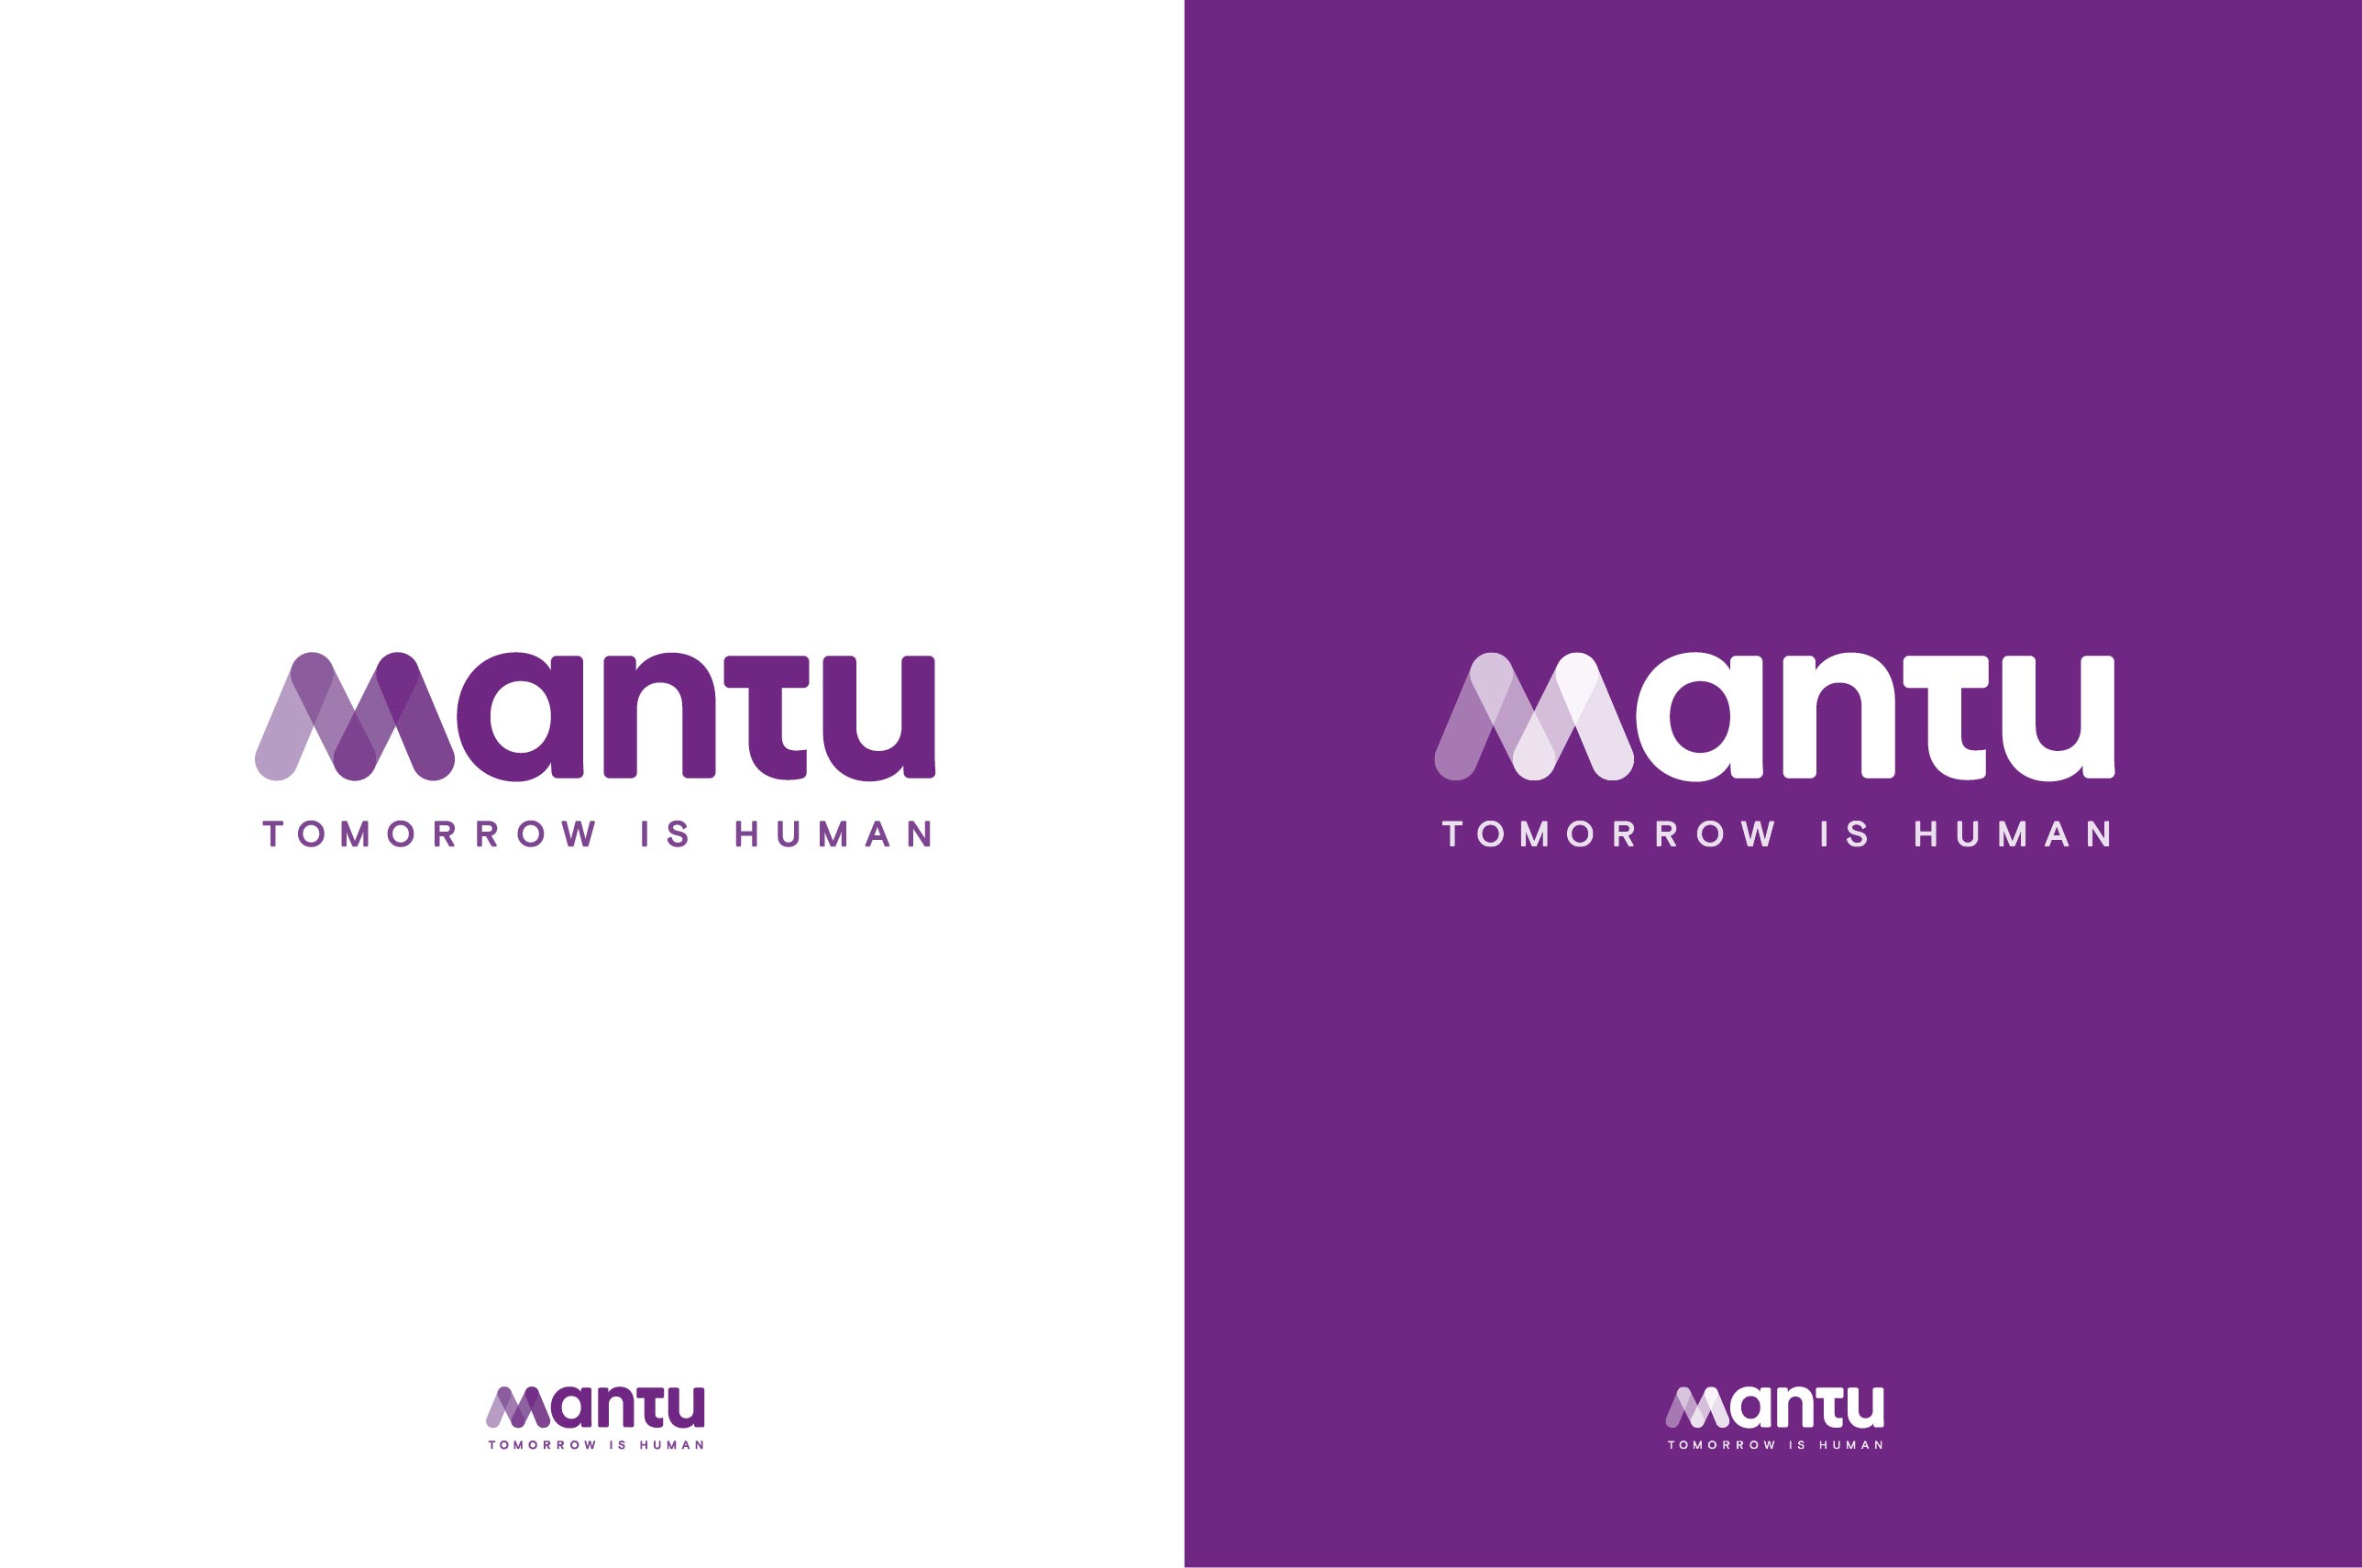 Mantu Logo with tagline